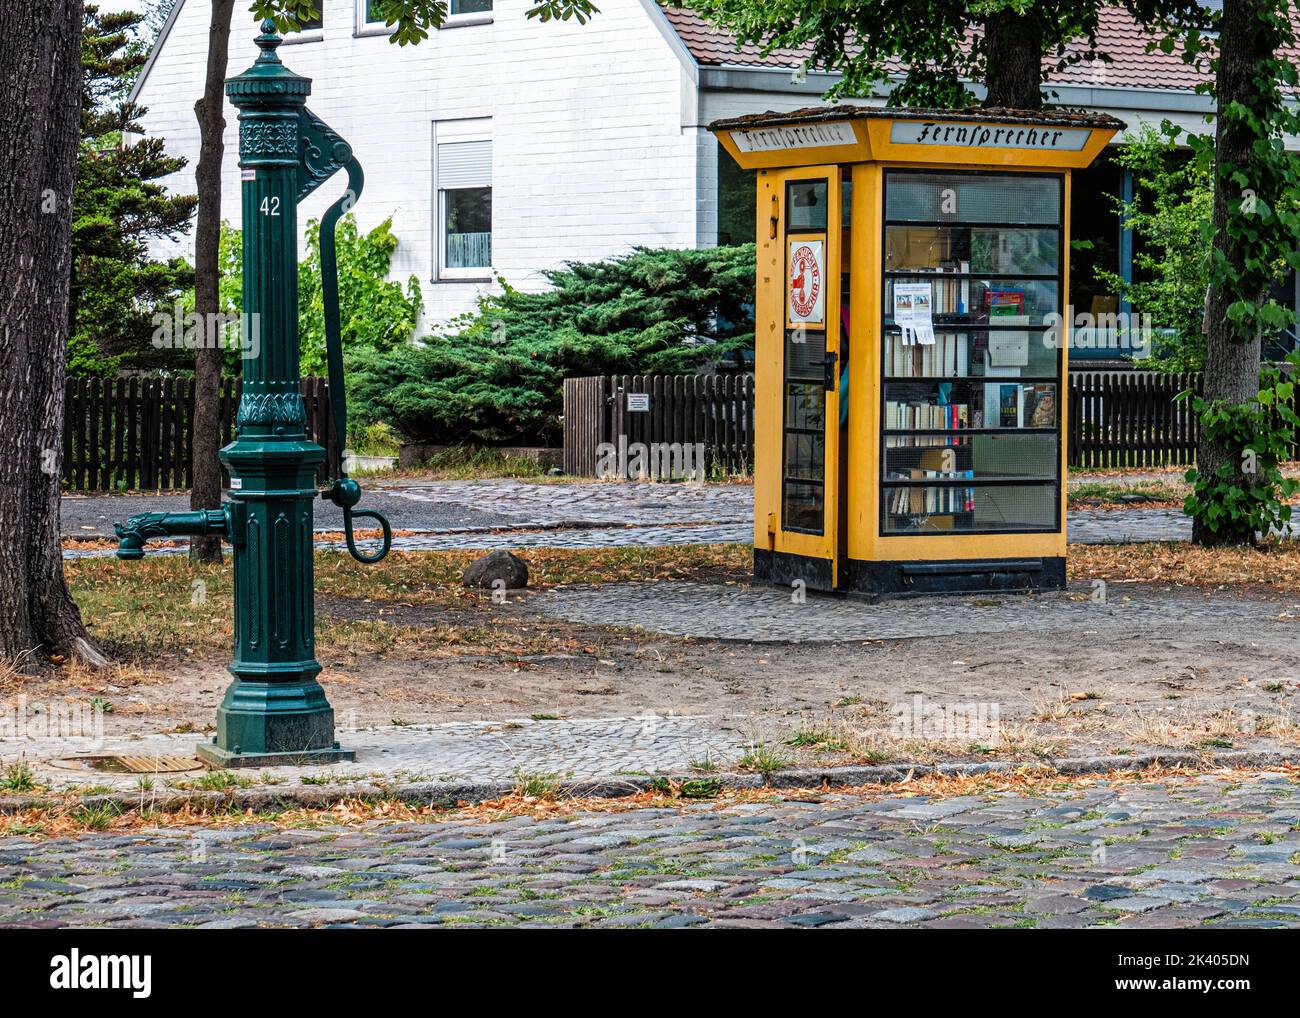 Fontana verde e vecchia cassetta telefonica gialla ora una piccola biblioteca prestito, Lübars, Reinickendorg, Berlino Foto Stock